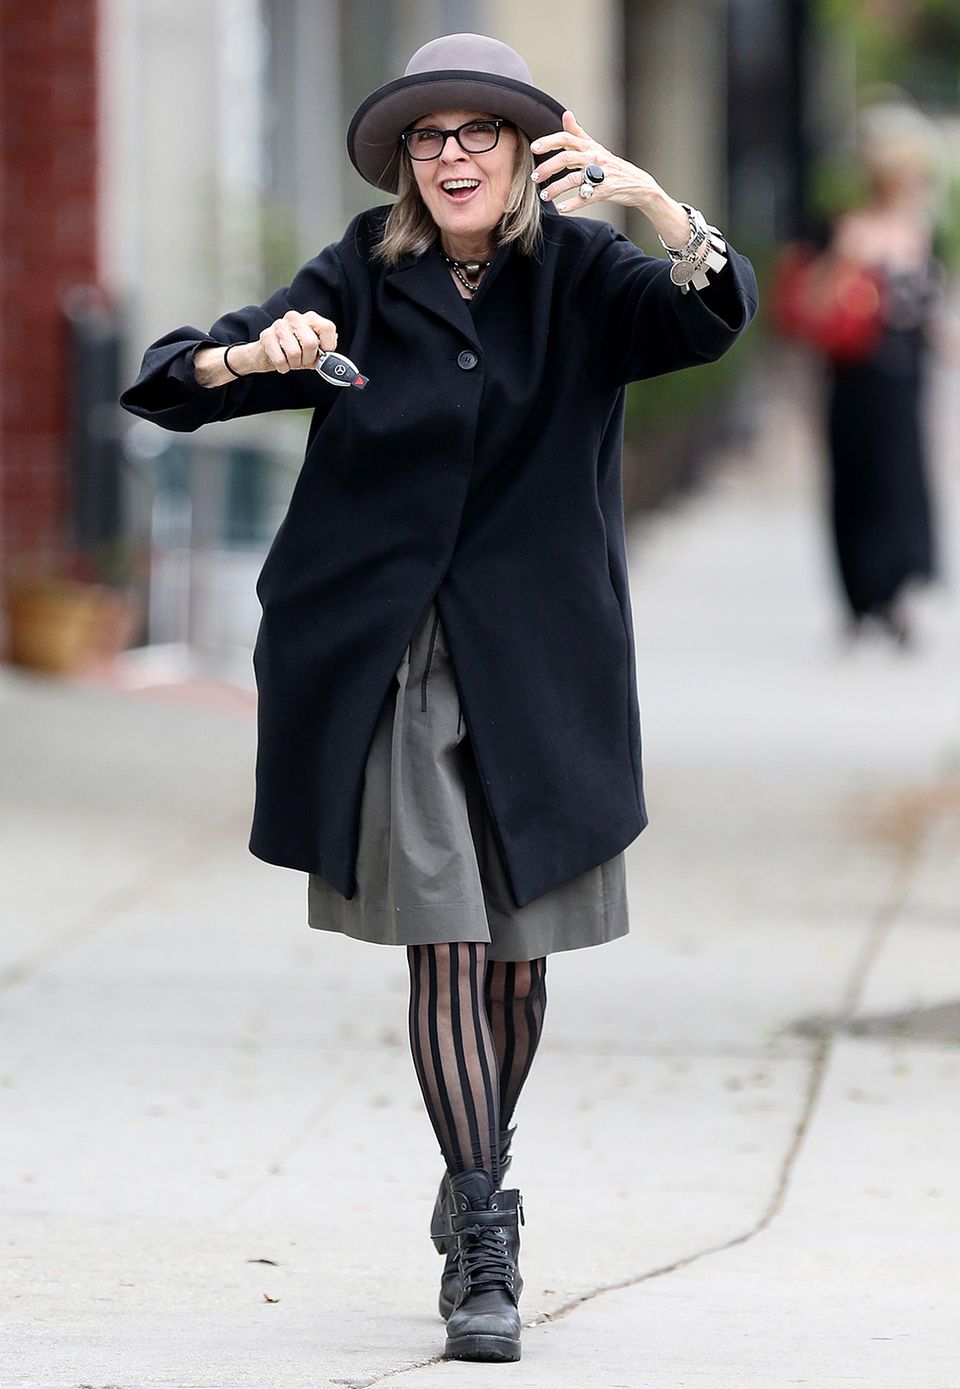 Hollywoodstar Diane Keaton kombiniert ihren schwarzen Eggshape-Mantel mit einem grauen Hut, gestreifter Strumpfhose und derben Schnürstiefeln.